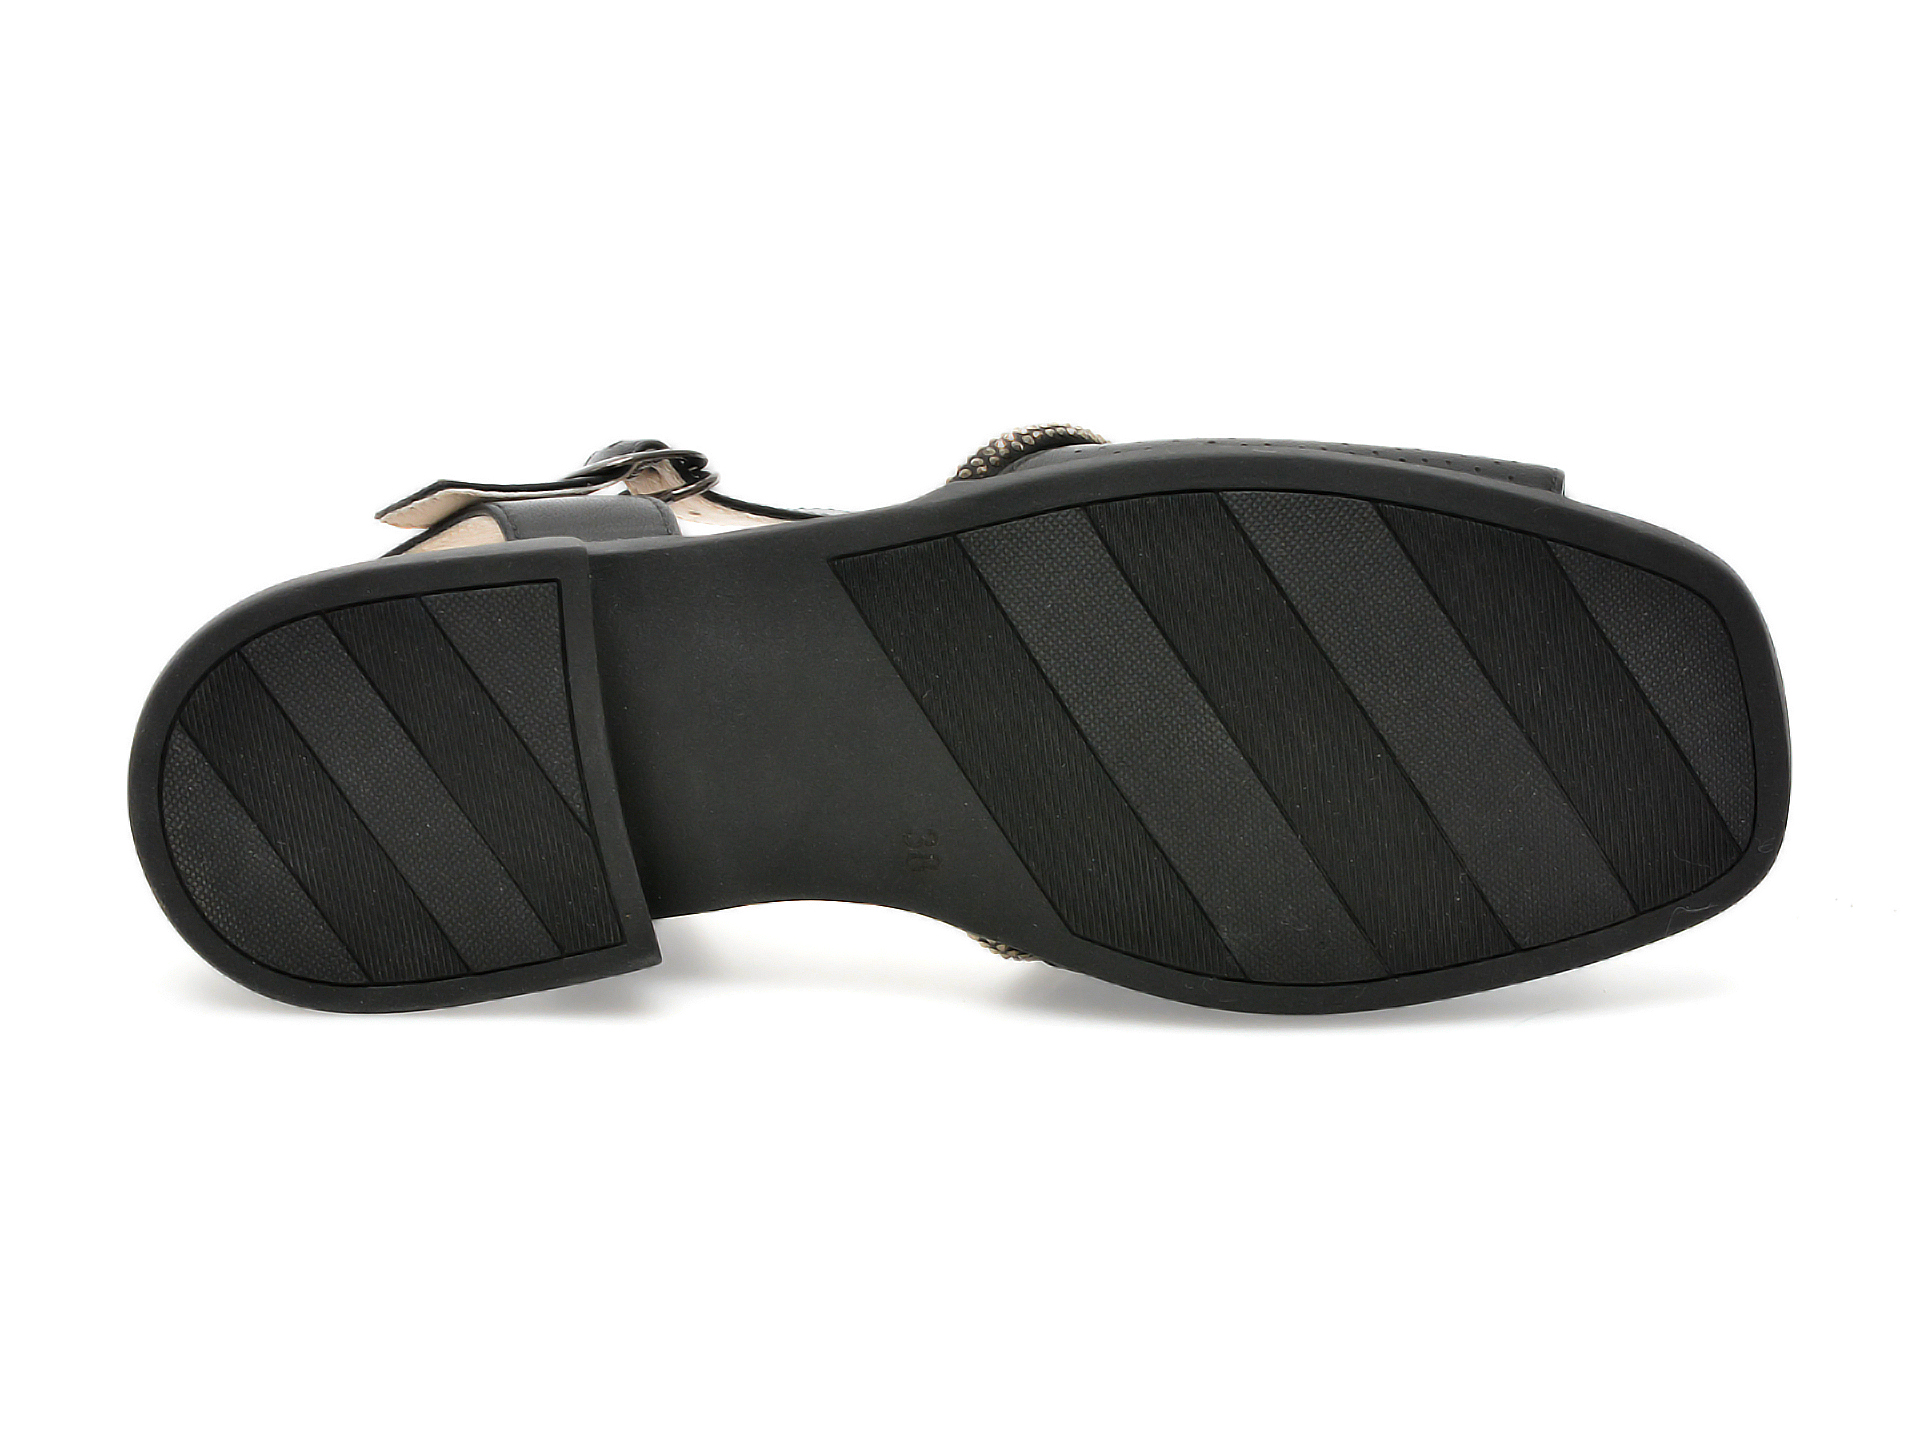 Sandale FLAVIA PASSINI negre, LX1117, din piele naturala